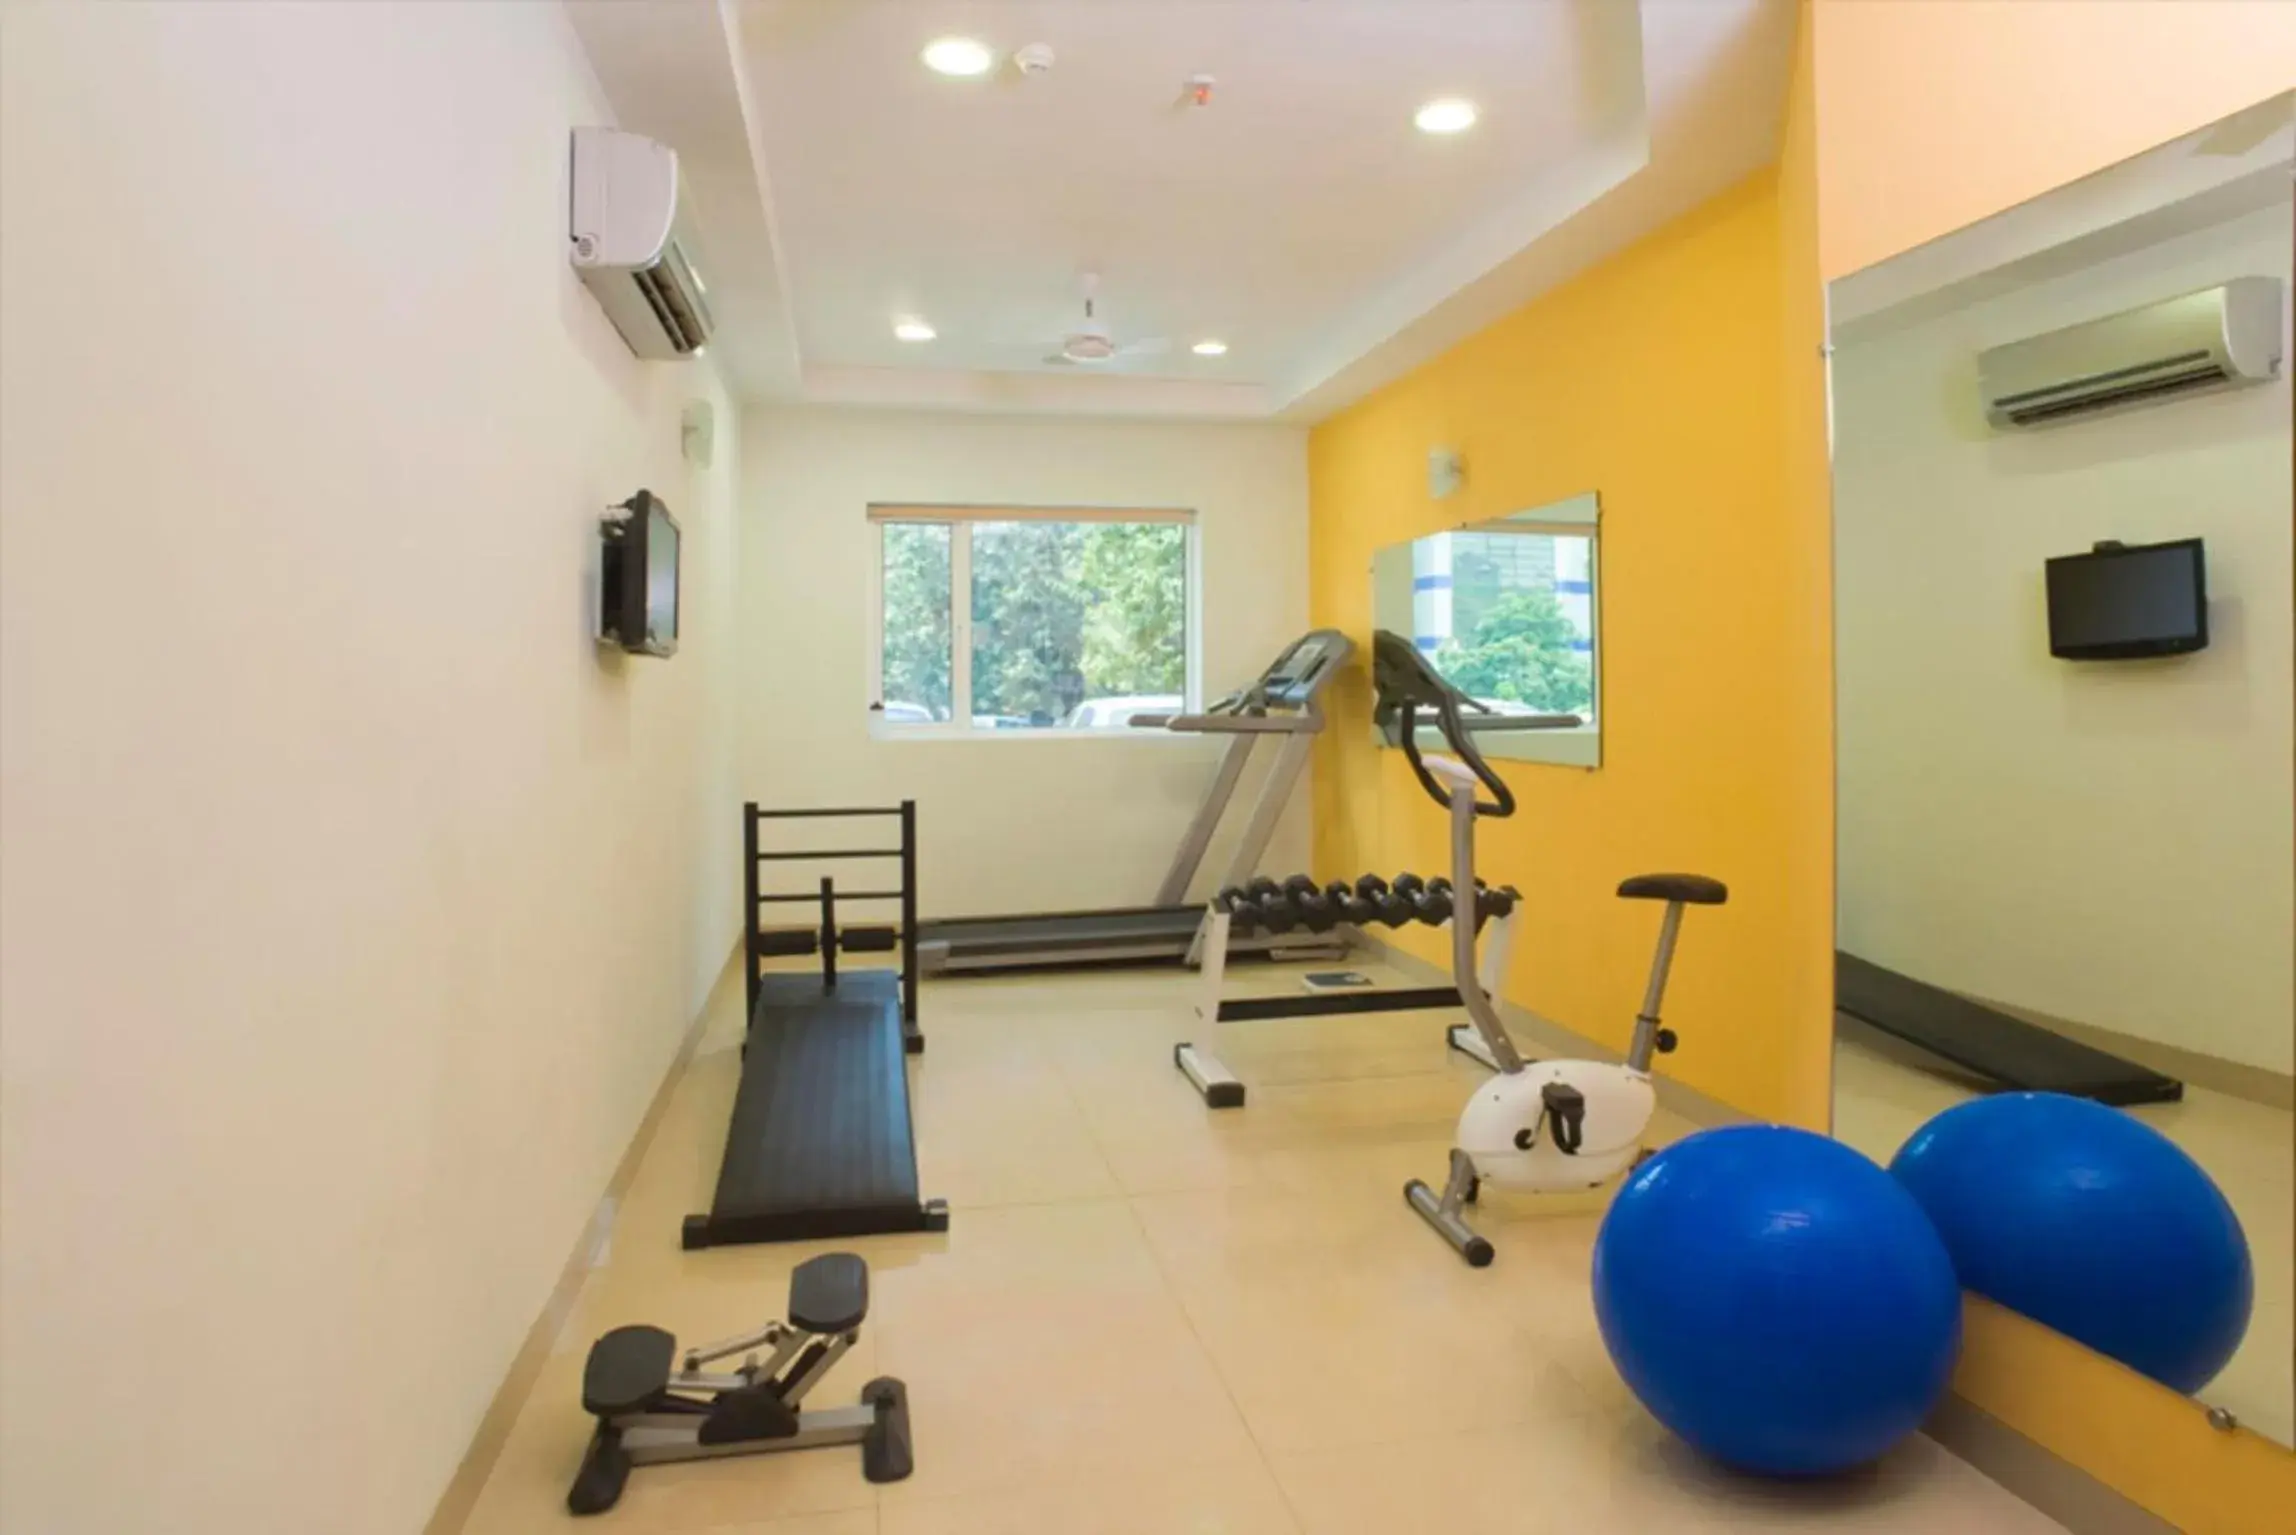 Fitness centre/facilities, Fitness Center/Facilities in Ginger Hotel Vadodara